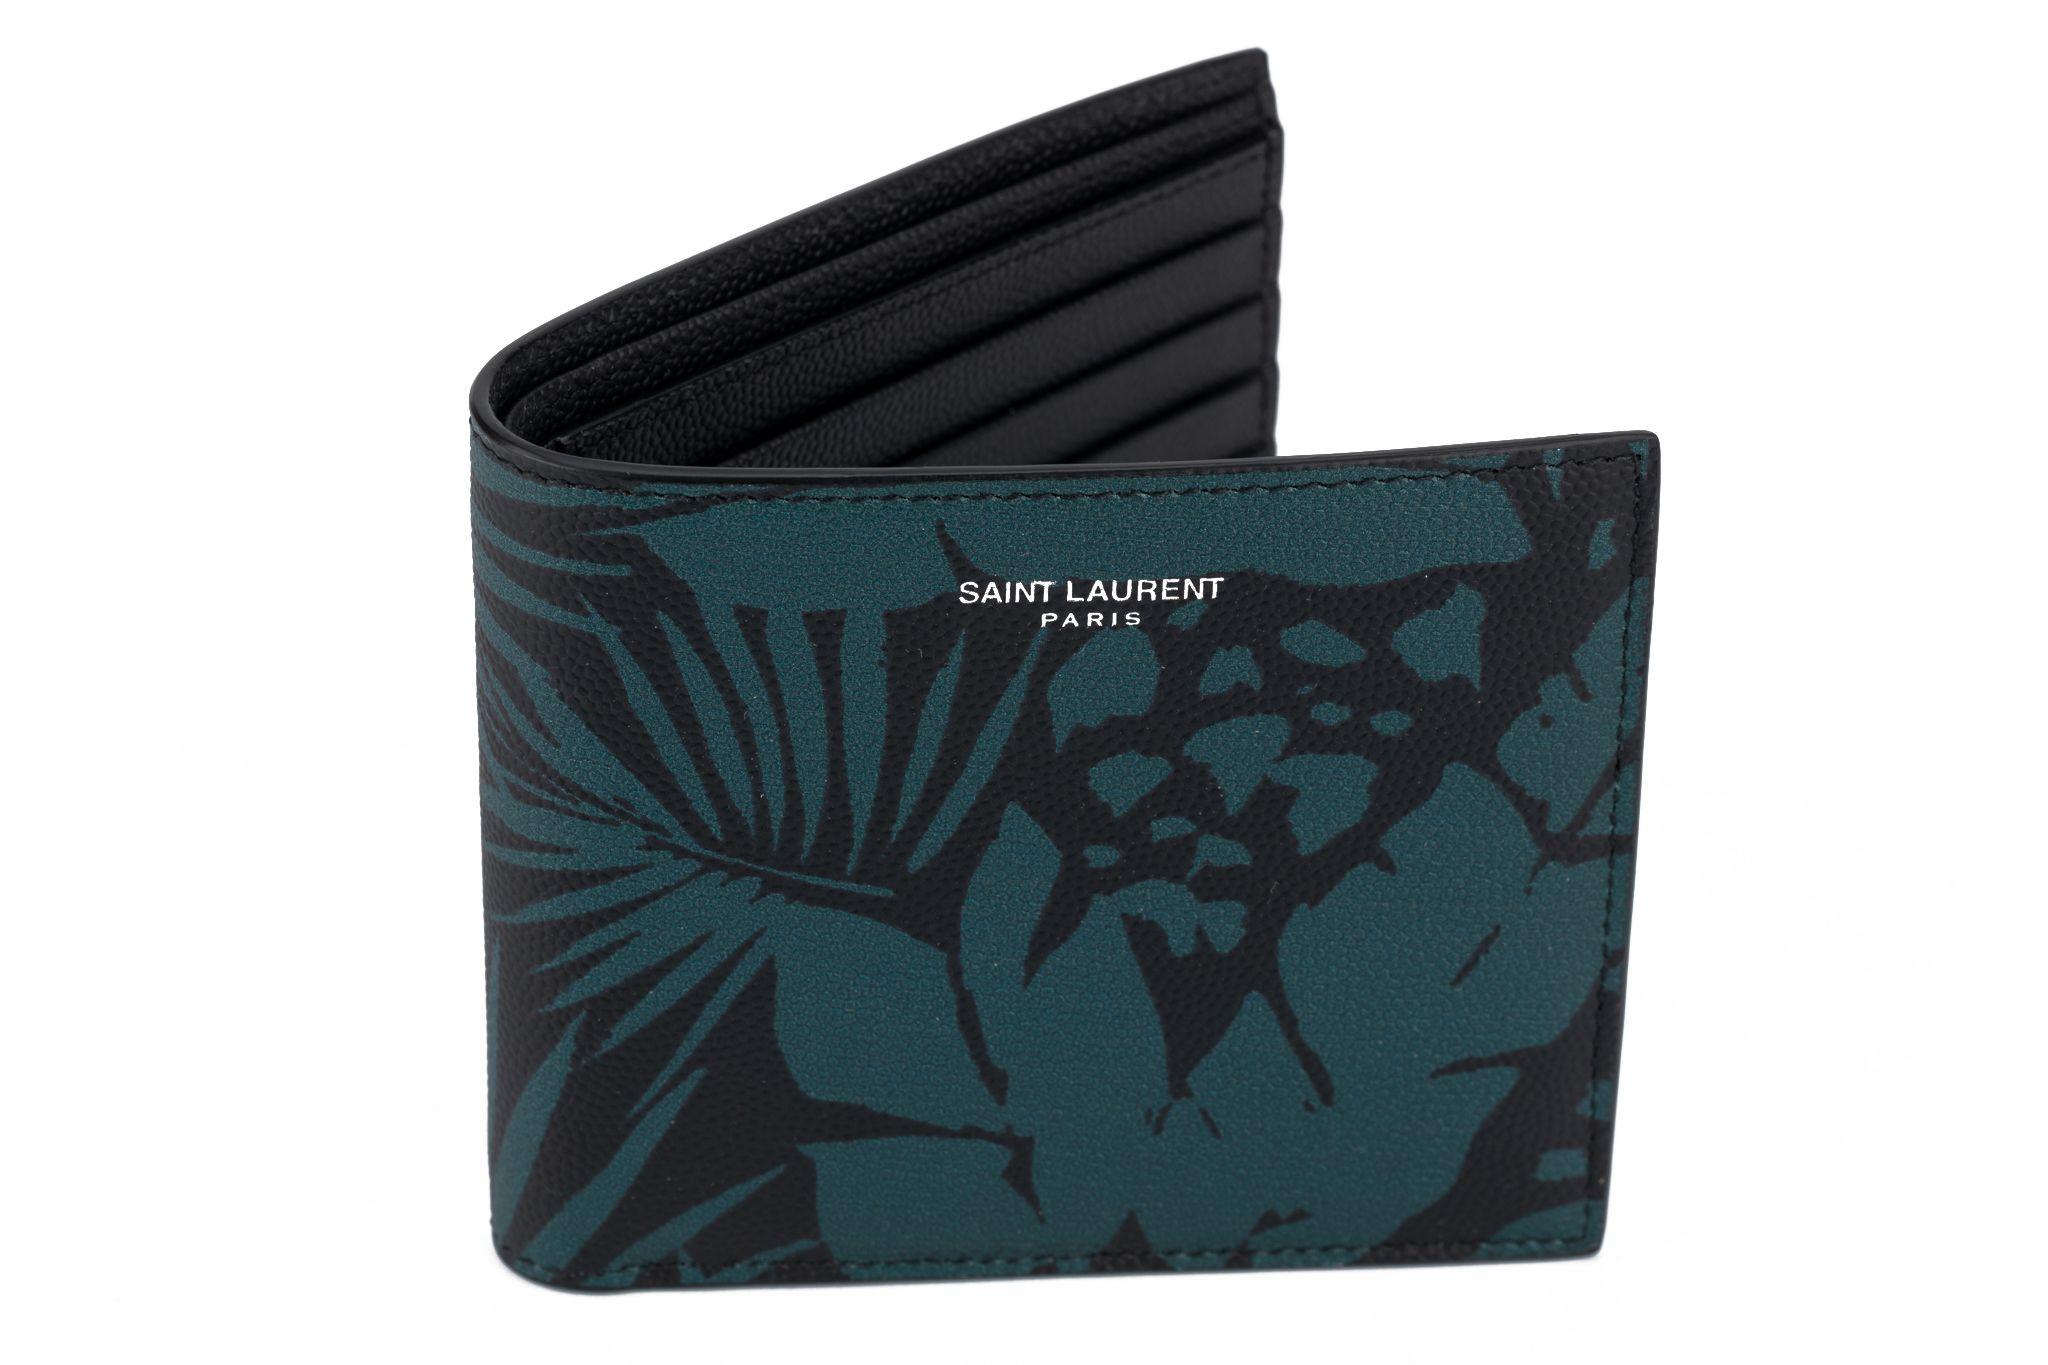 YSL neue petrolfarbene und schwarz bedruckte Brieftasche aus Leder. 
Kommt mit Booklet, Original-Schutzumschlag und Box.